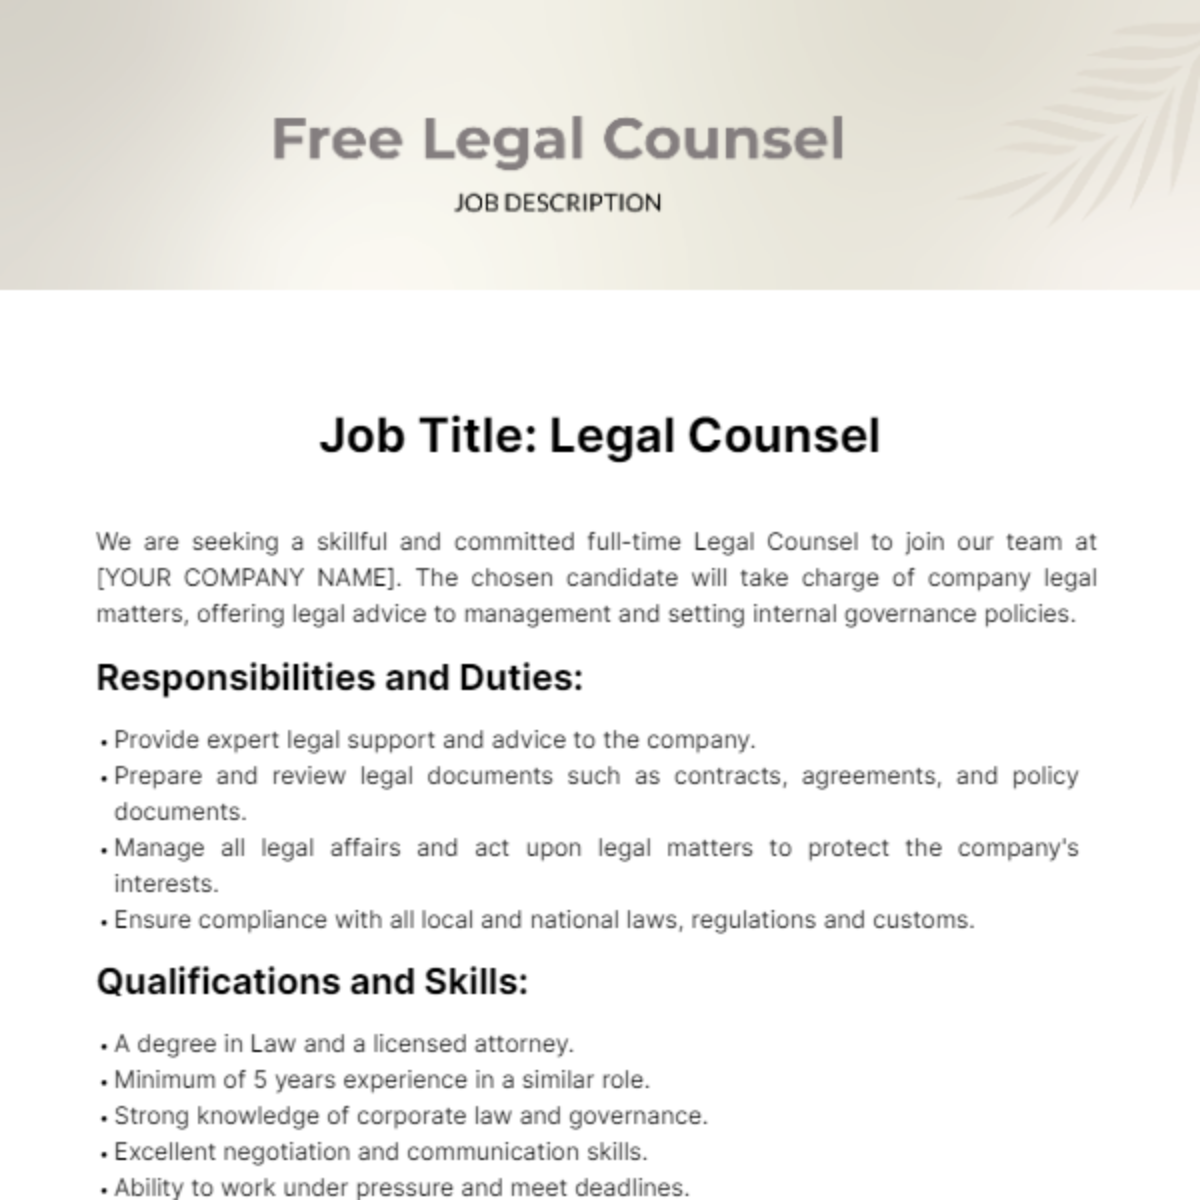 Free Legal Counsel Job Description Template